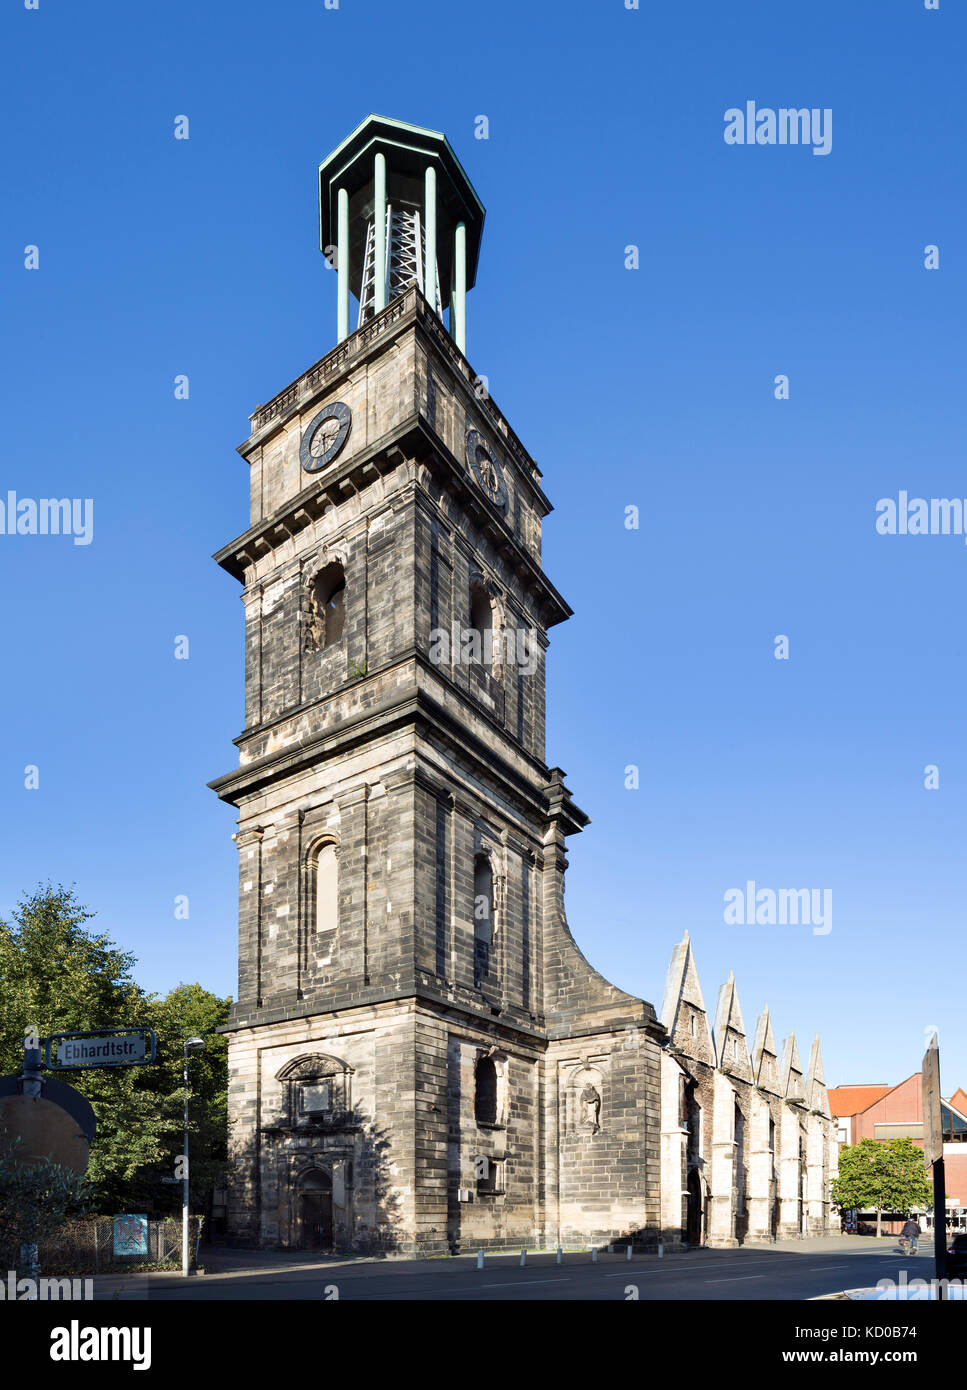 Ruine de la aegidienkirche, mémorial de la seconde guerre mondiale, Hanovre, Basse-Saxe, Allemagne Banque D'Images